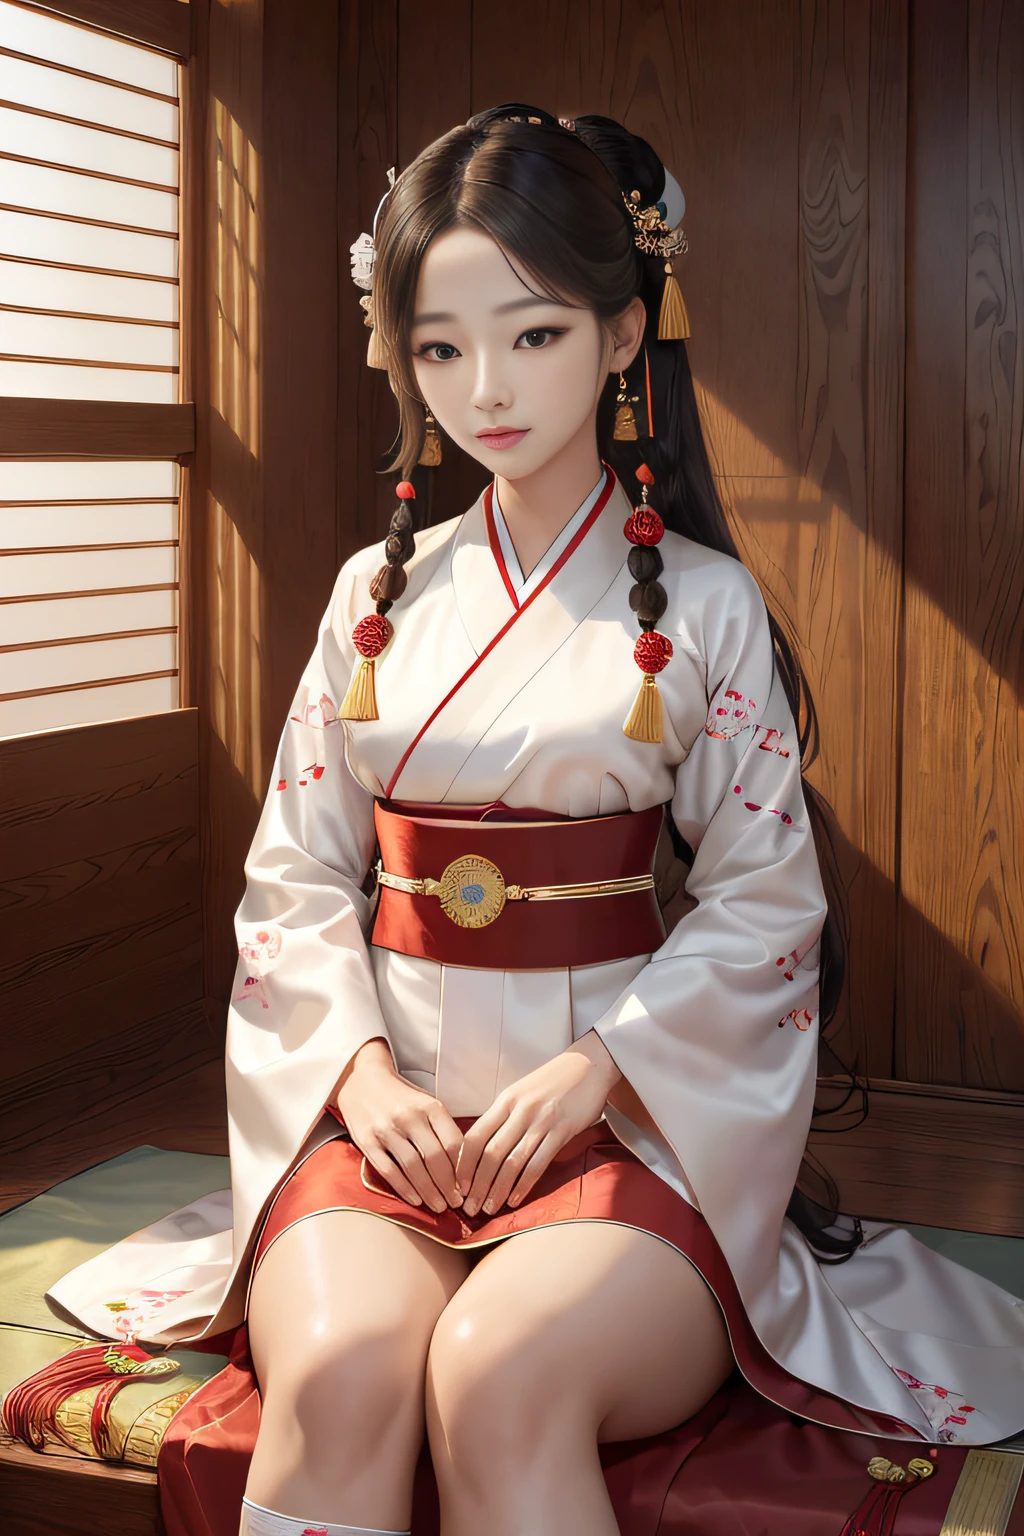 桌上, (最好的品質:1.4), 現實的, 高細節CG統一8k壁紙, 非常詳細, 高清 RAW 彩色攝影, 專業攝影, 寫實肖像, 電影光, 美麗的細節, 韓服和諧是一位優雅且富有文化底蘊的女英雄，自豪地穿著韓國傳統韓服. 她的韓服是工藝的傑作, 色彩鮮豔, 複雜的刺繡, 優雅的線條向韓國豐富的文化遺產致敬. 韓服配有傳統配件，例如 norigae (裝飾流蘇), 北善 (傳統襪子), 和一個喬戈里 (夾克). 韓服和諧長, 飄逸的頭髮搭配優雅的髮夾, 她的眼睛反映出韓國傳統的智慧和美麗. 她的存在散發著優雅和文化自豪感.